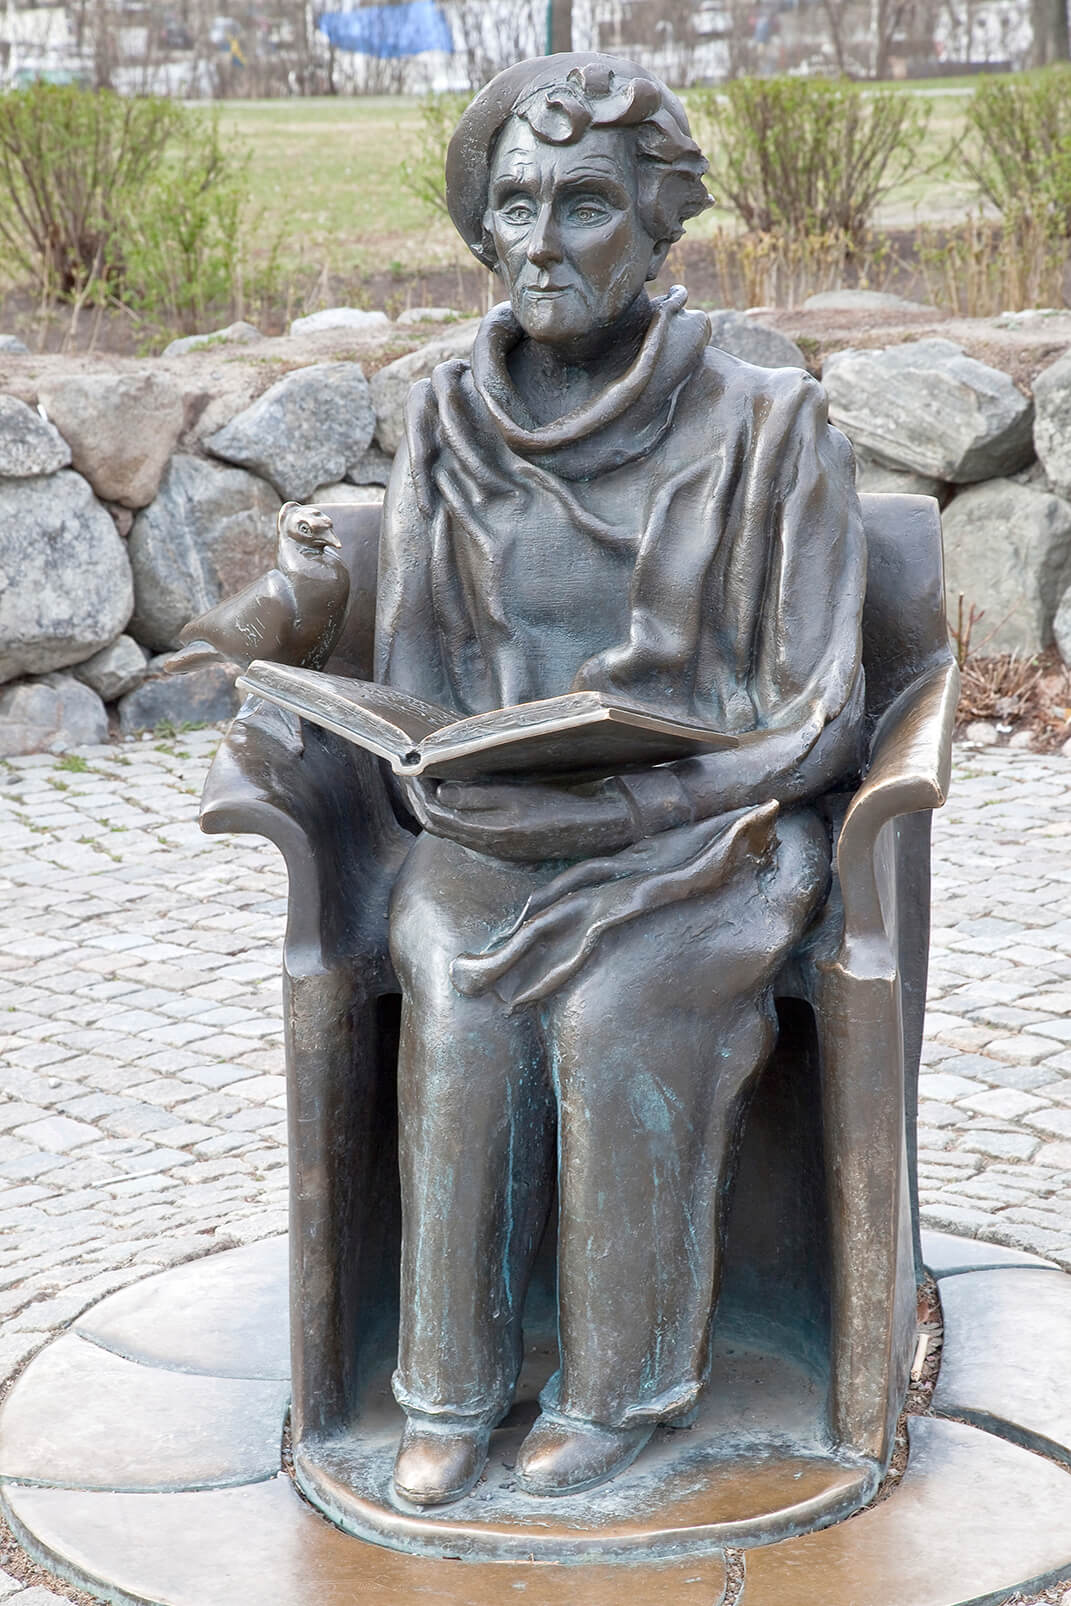 Sculpture storyteller on the island of Stockholm. Sweden.